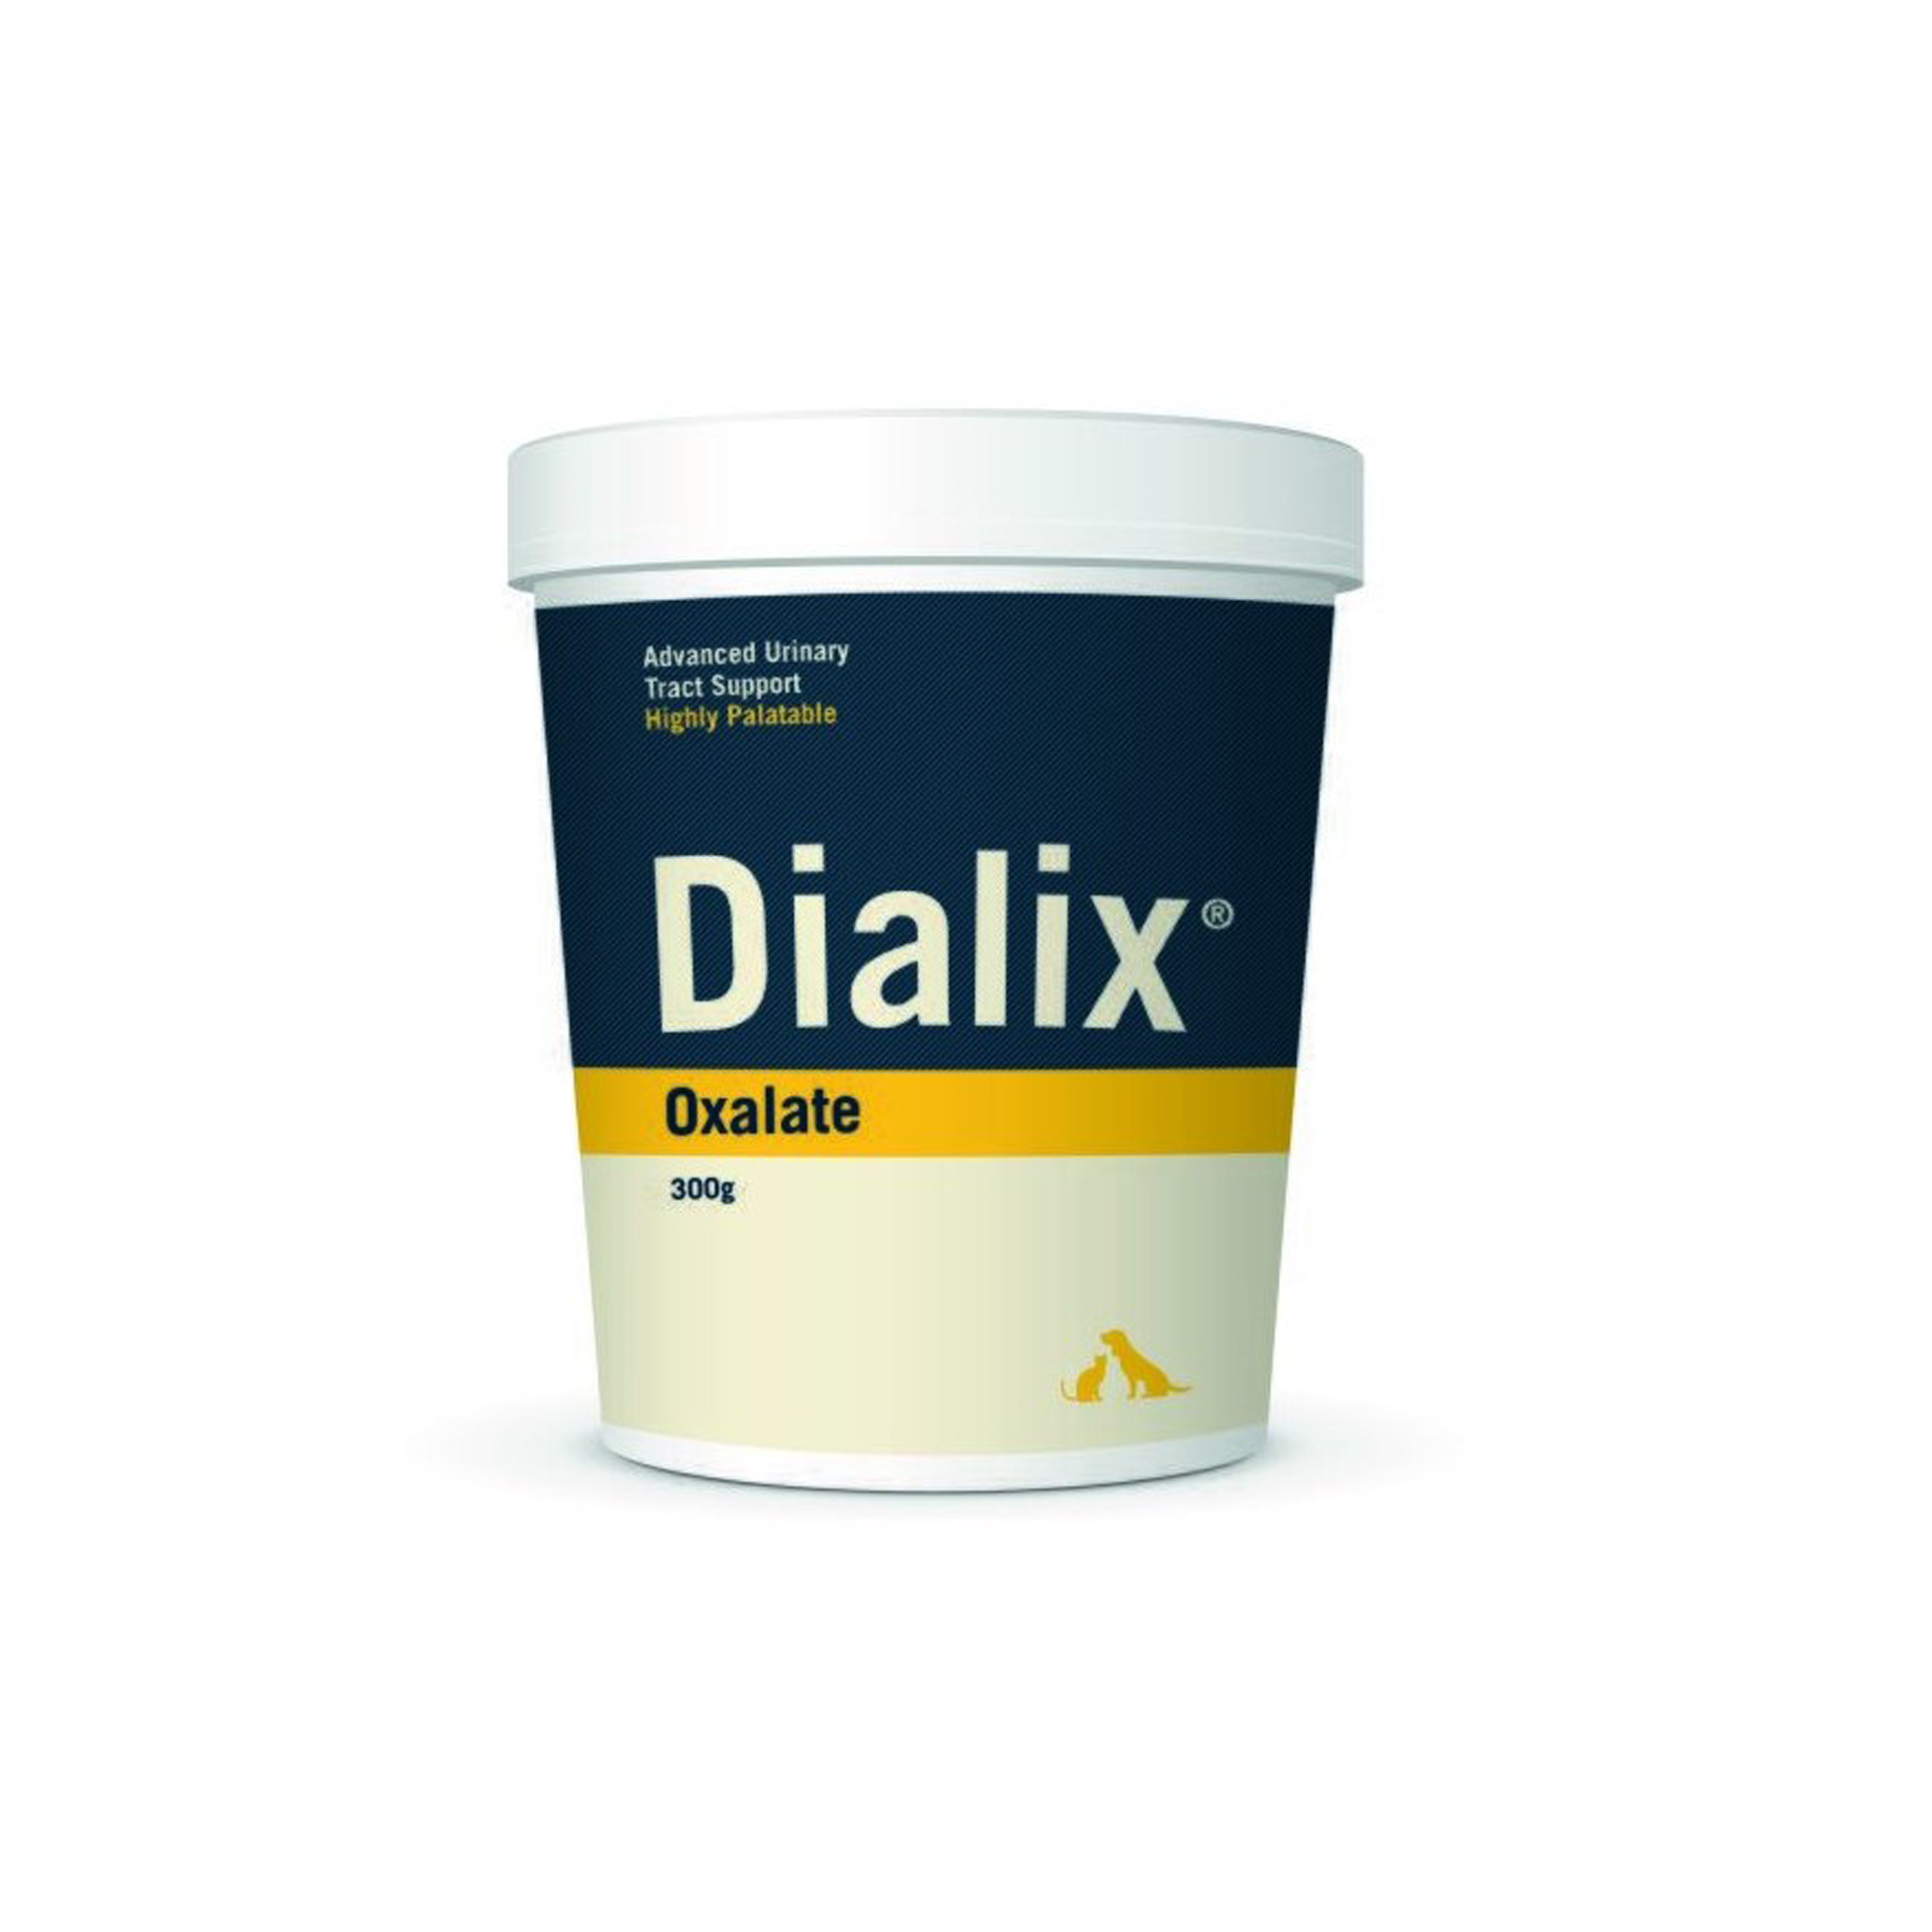 DIALIX® Oxalate